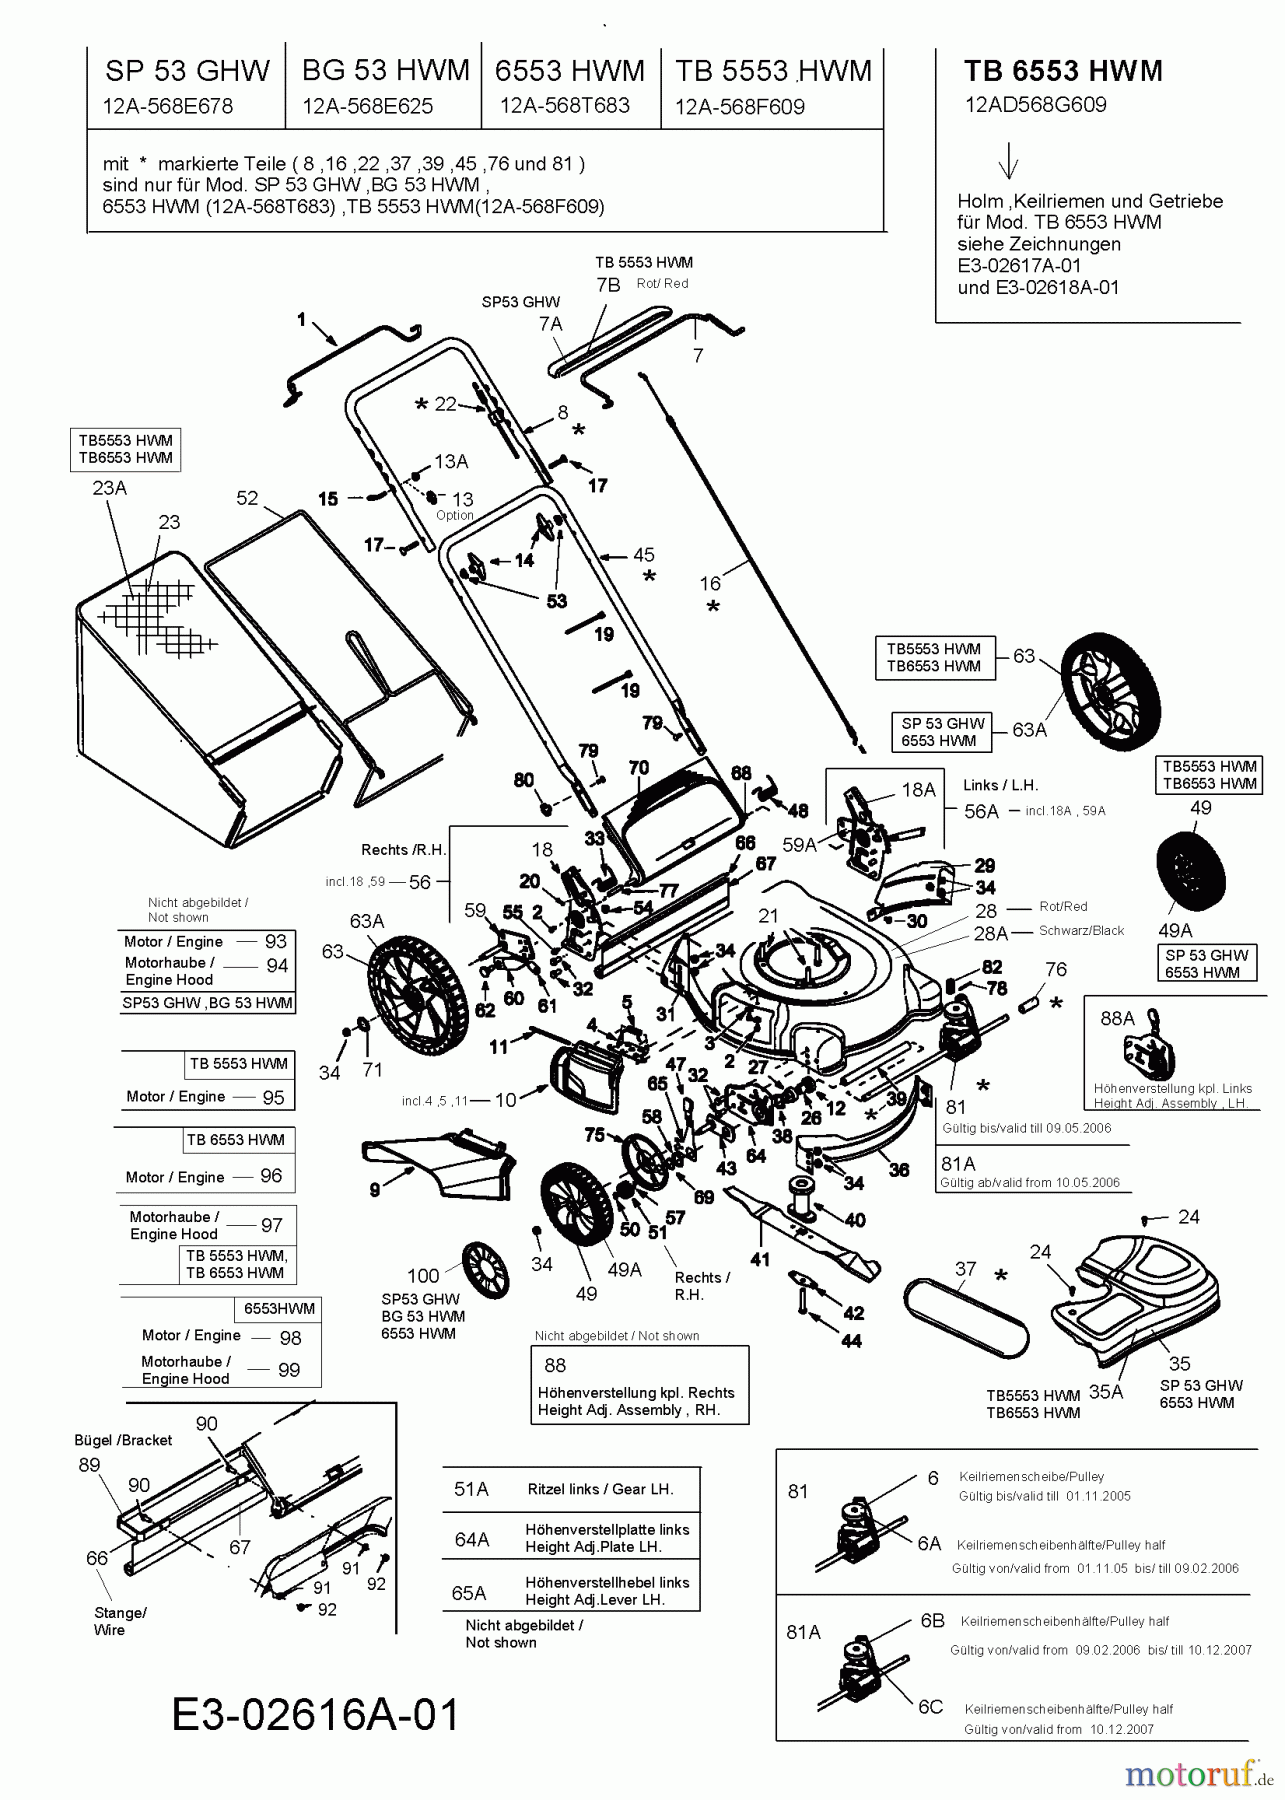  Troy-Bilt Motormäher mit Antrieb TB 6553 HWM 12AD568G609  (2006) Grundgerät